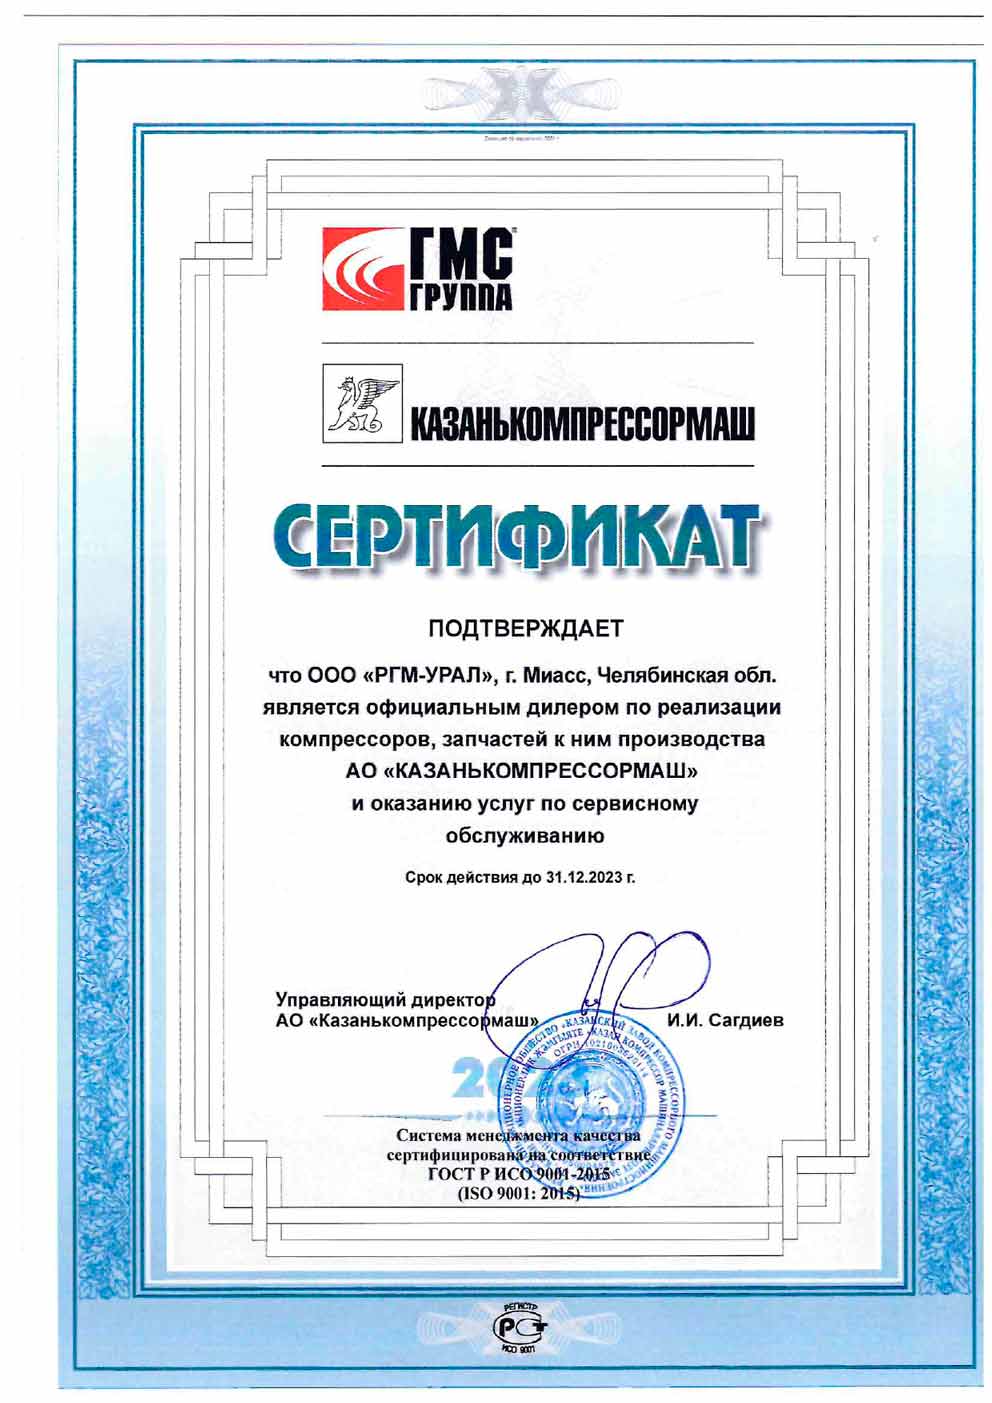 Сертификат от ОАО «Казанькомпрессормаш» до 31.12.2021